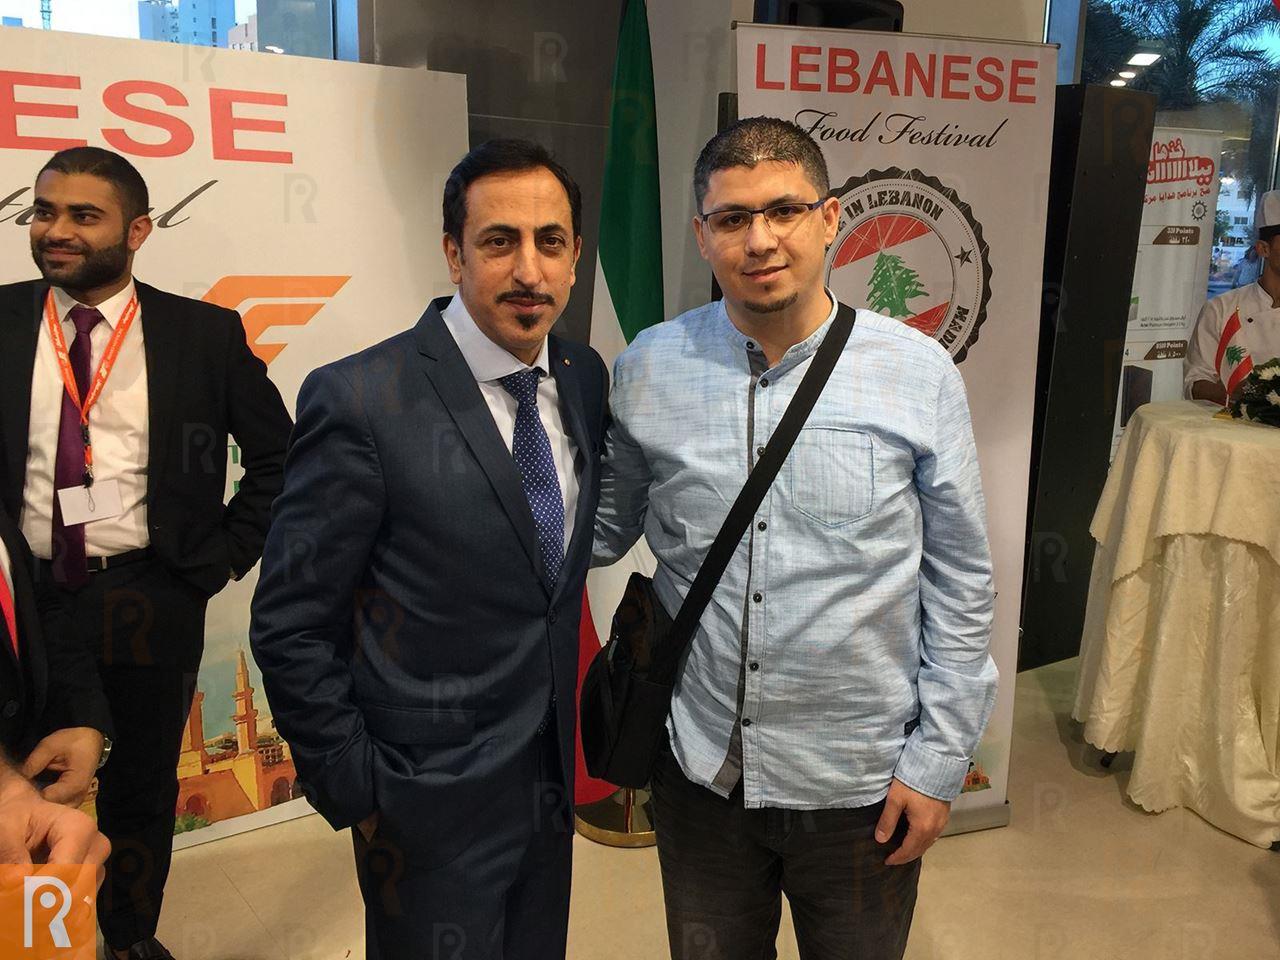 السفير اللبناني في الكويت ماهر خير مع السيد علي سليمان، شريك مؤسس في رنّوو.نت